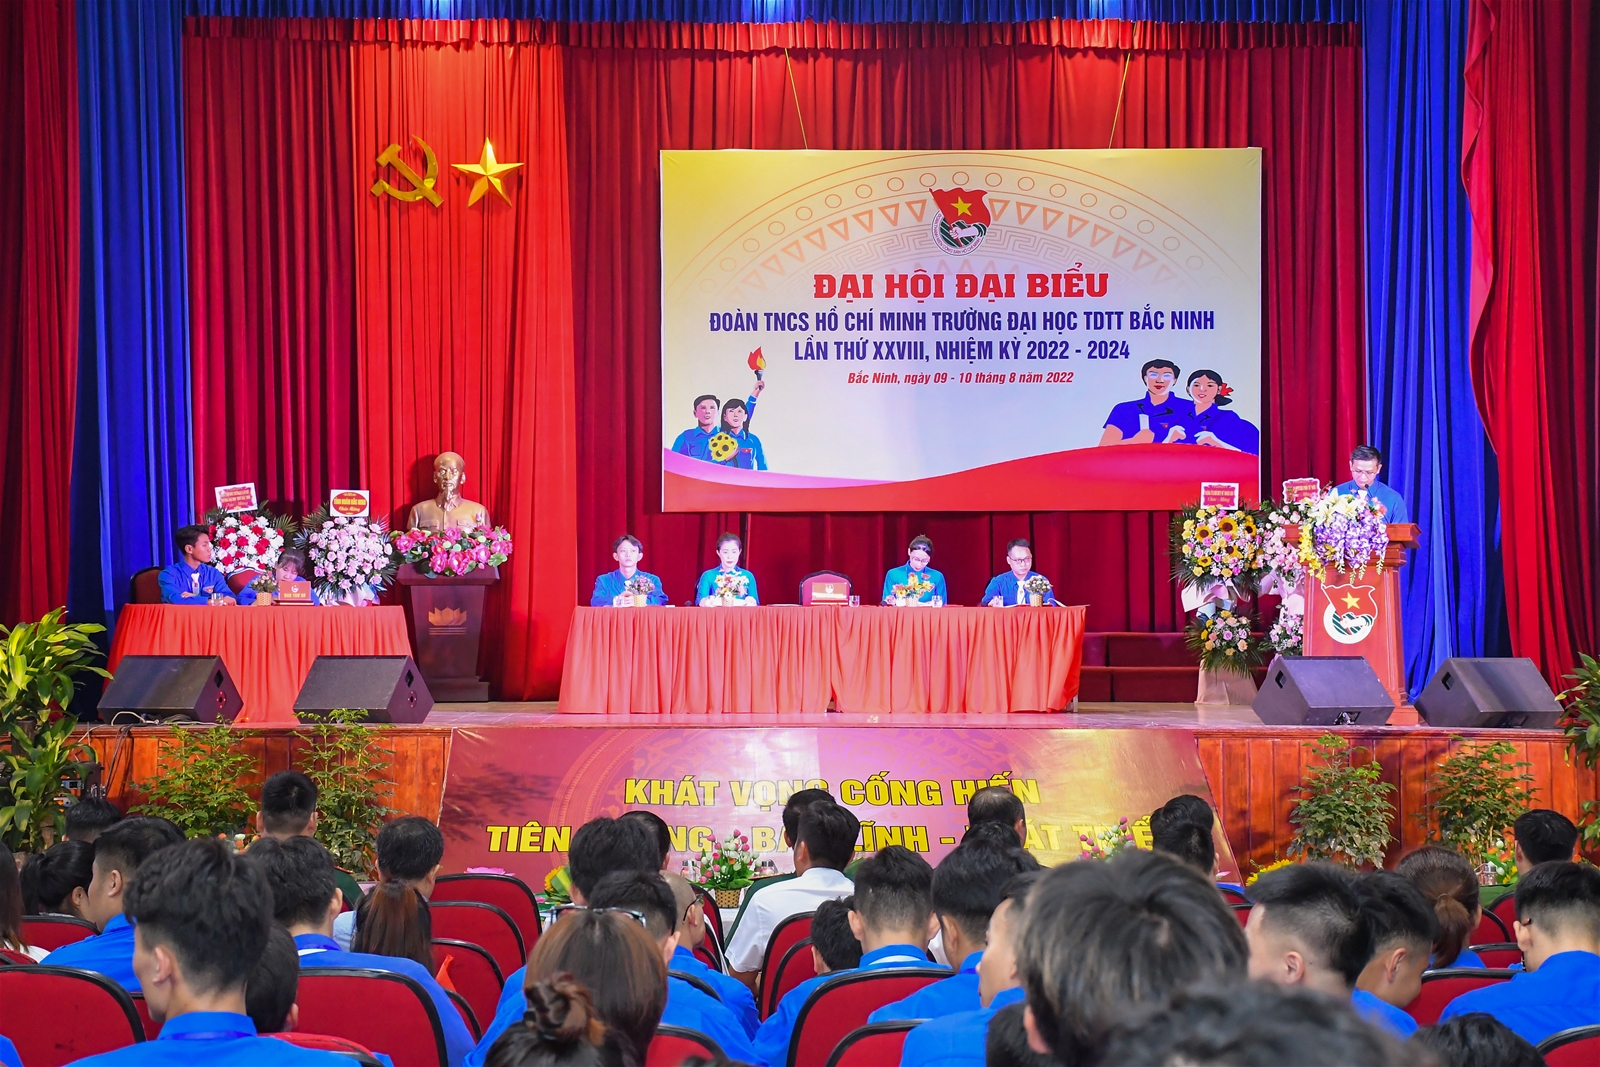 Đại hội Đại biểu Đoàn TNCS Hồ Chí Minh Trường Đại học TDTT Bắc Ninh, lần thứ XXVIII, nhiệm kỳ 2022 - 2024.